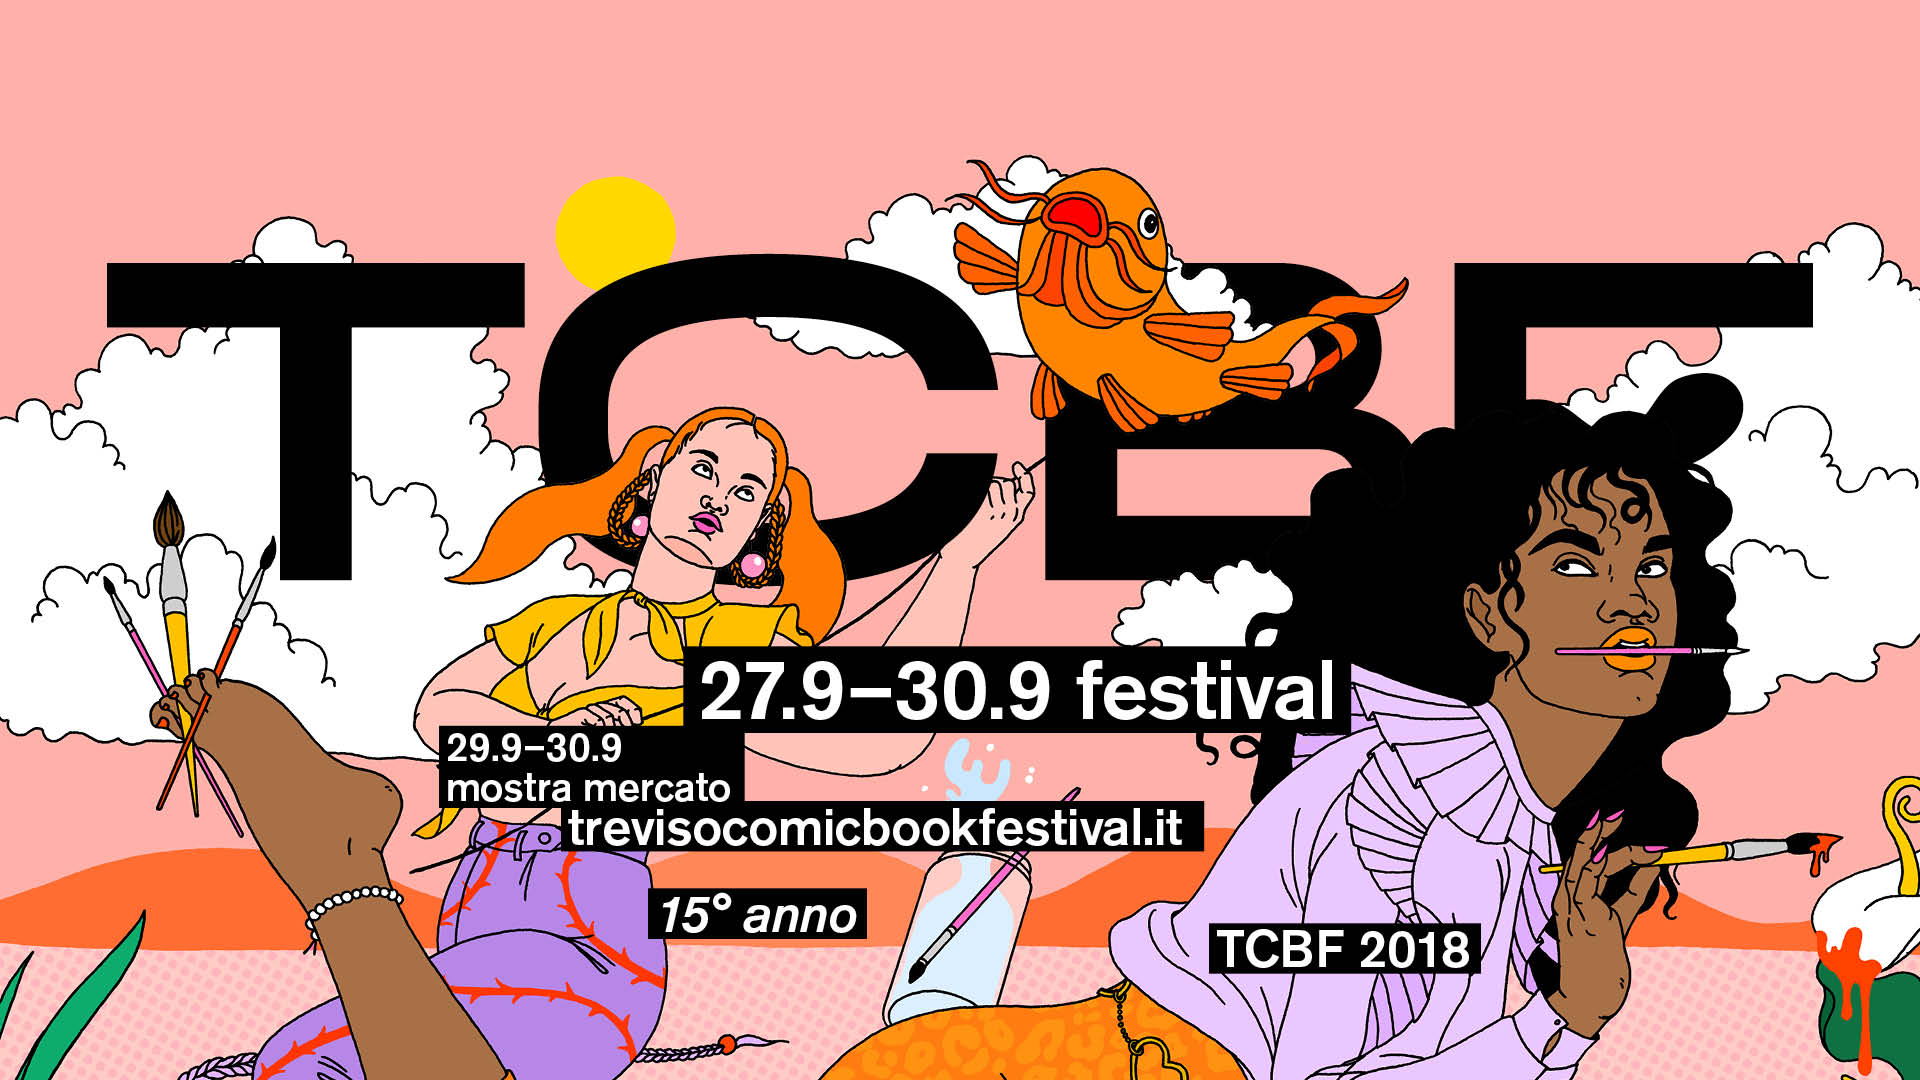 Treviso Comic Book Festival 2018: tutti i vincitori dei Premi Boscarato